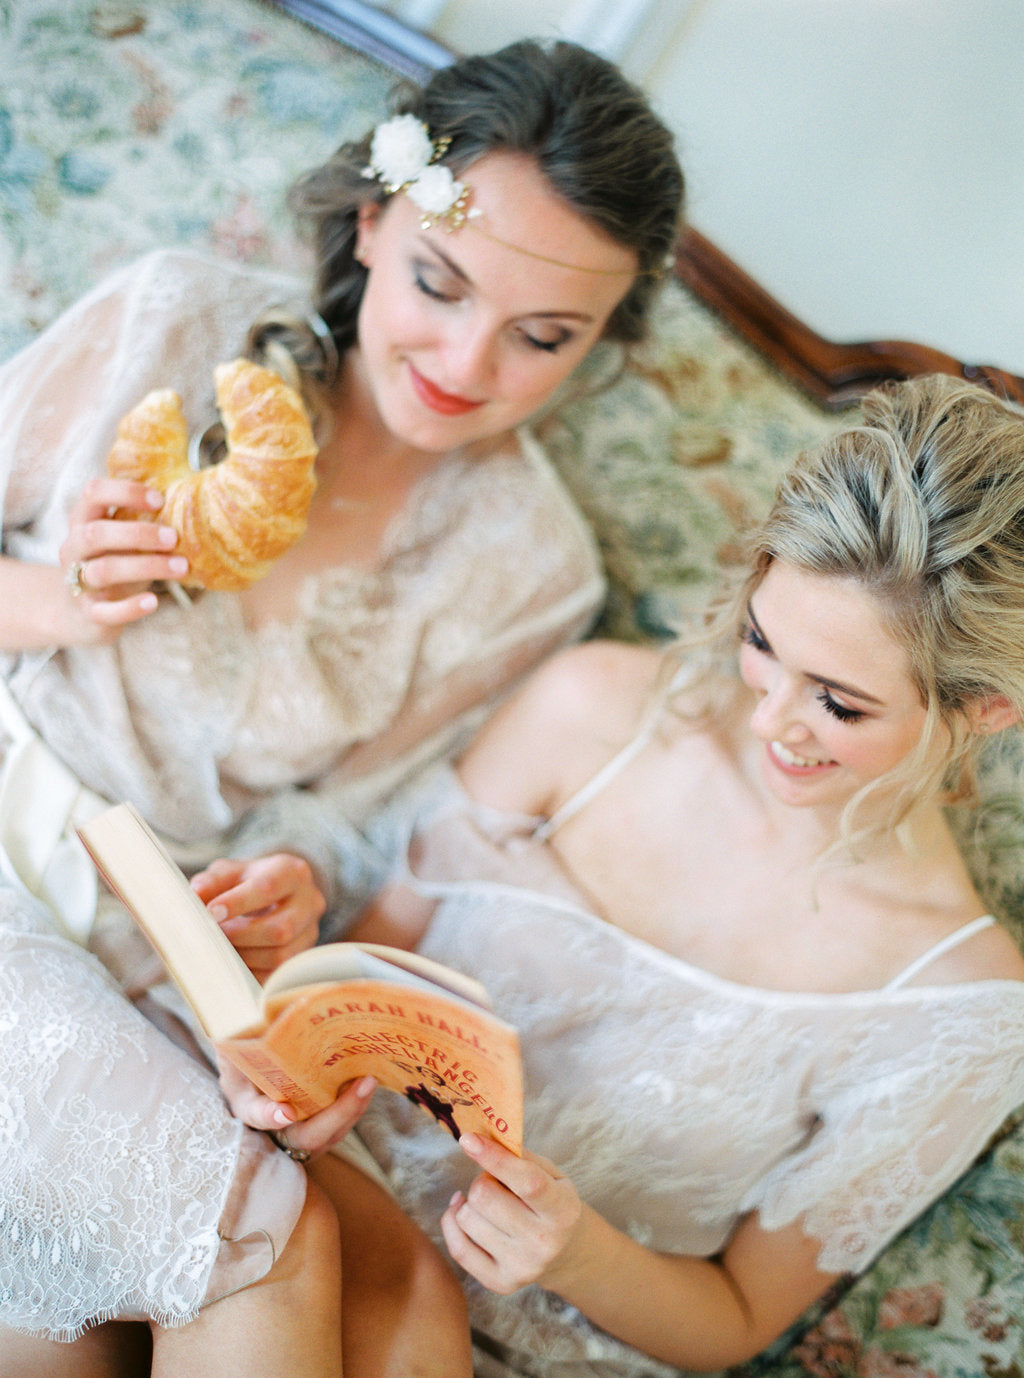 Croissants zur Hochzeit sind lecker